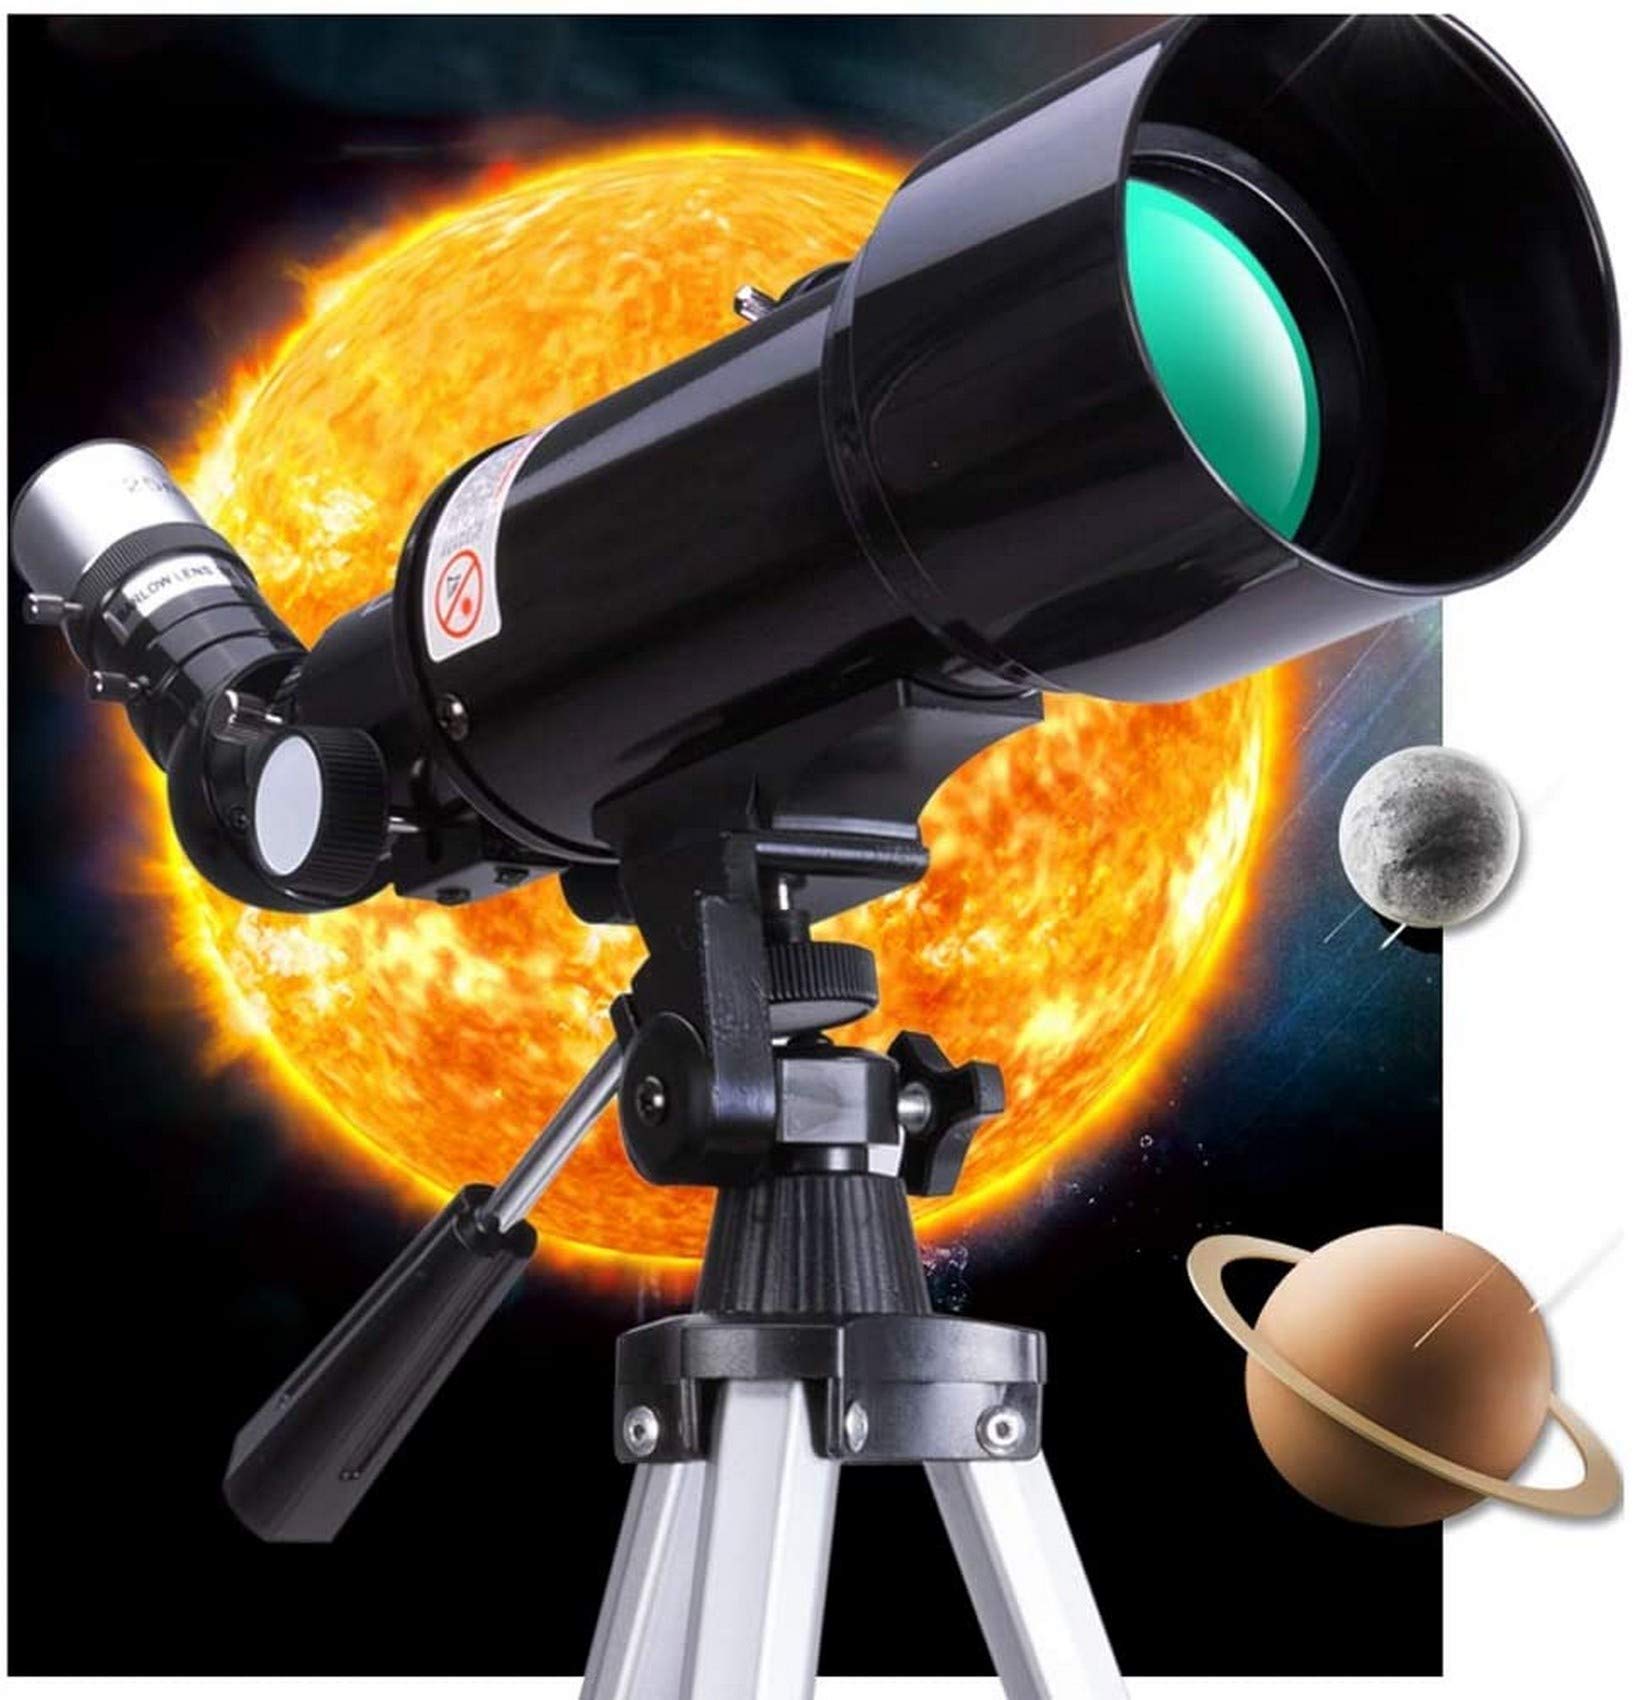 Tragbares Outdoor-Teleskop, Teleskope für die Astronomie, Refraktor-Teleskop, vollvergütete Glasoptik, ideales Teleskop für Anfänger mit tragbarer Tasche und Stativ (Paket 2 A)